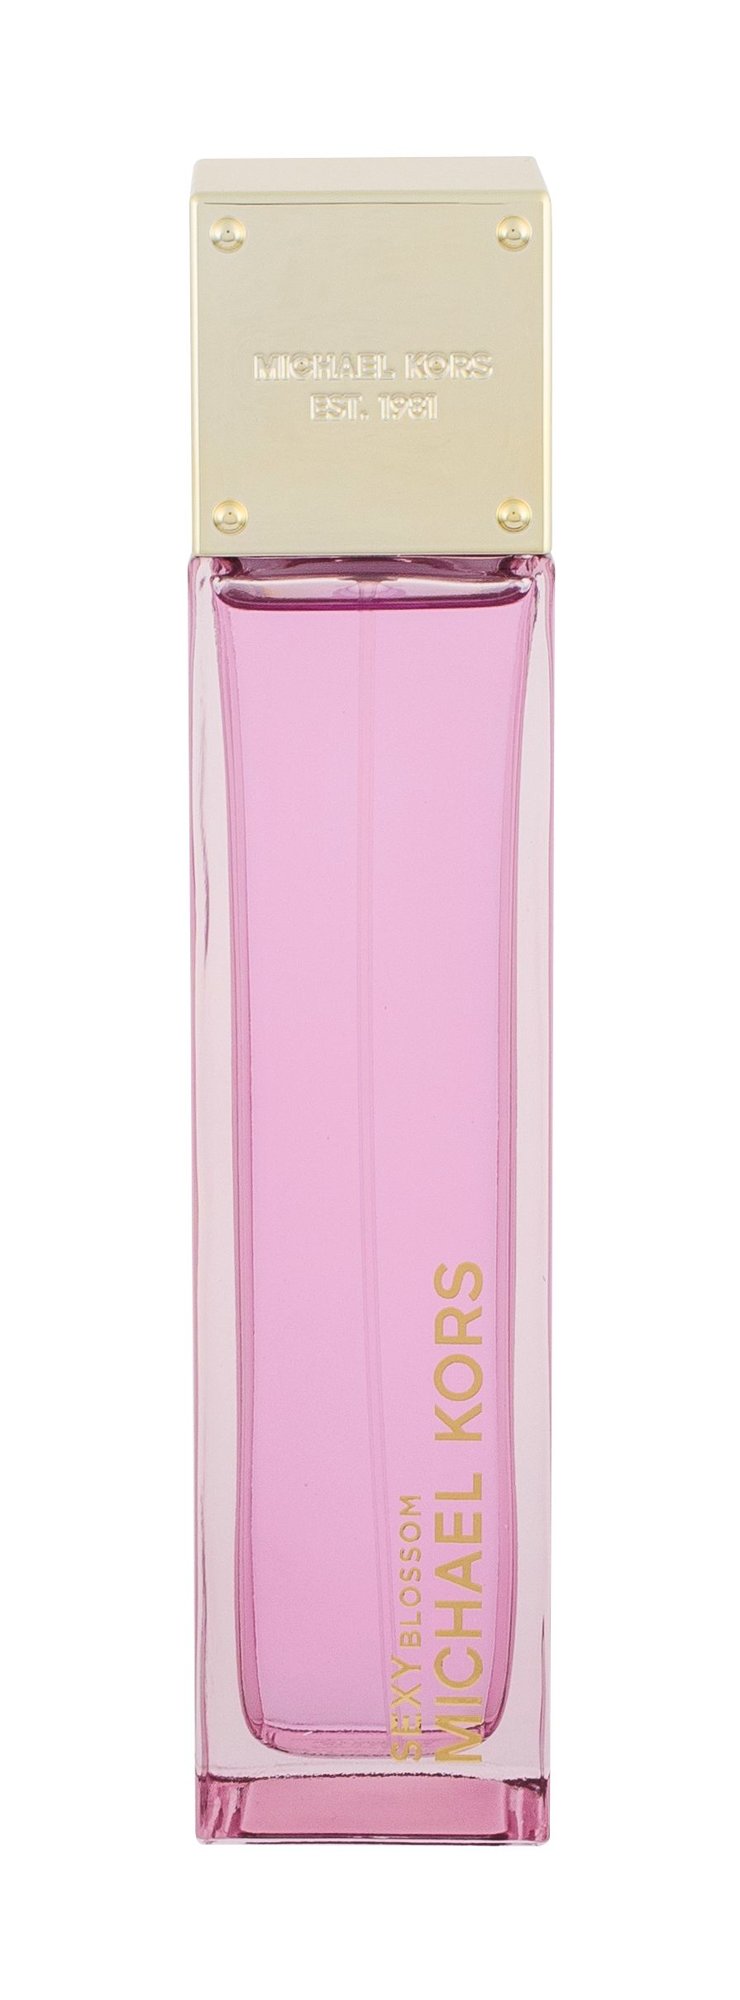 Michael Kors Sexy Blossom, Parfumovaná voda 100ml